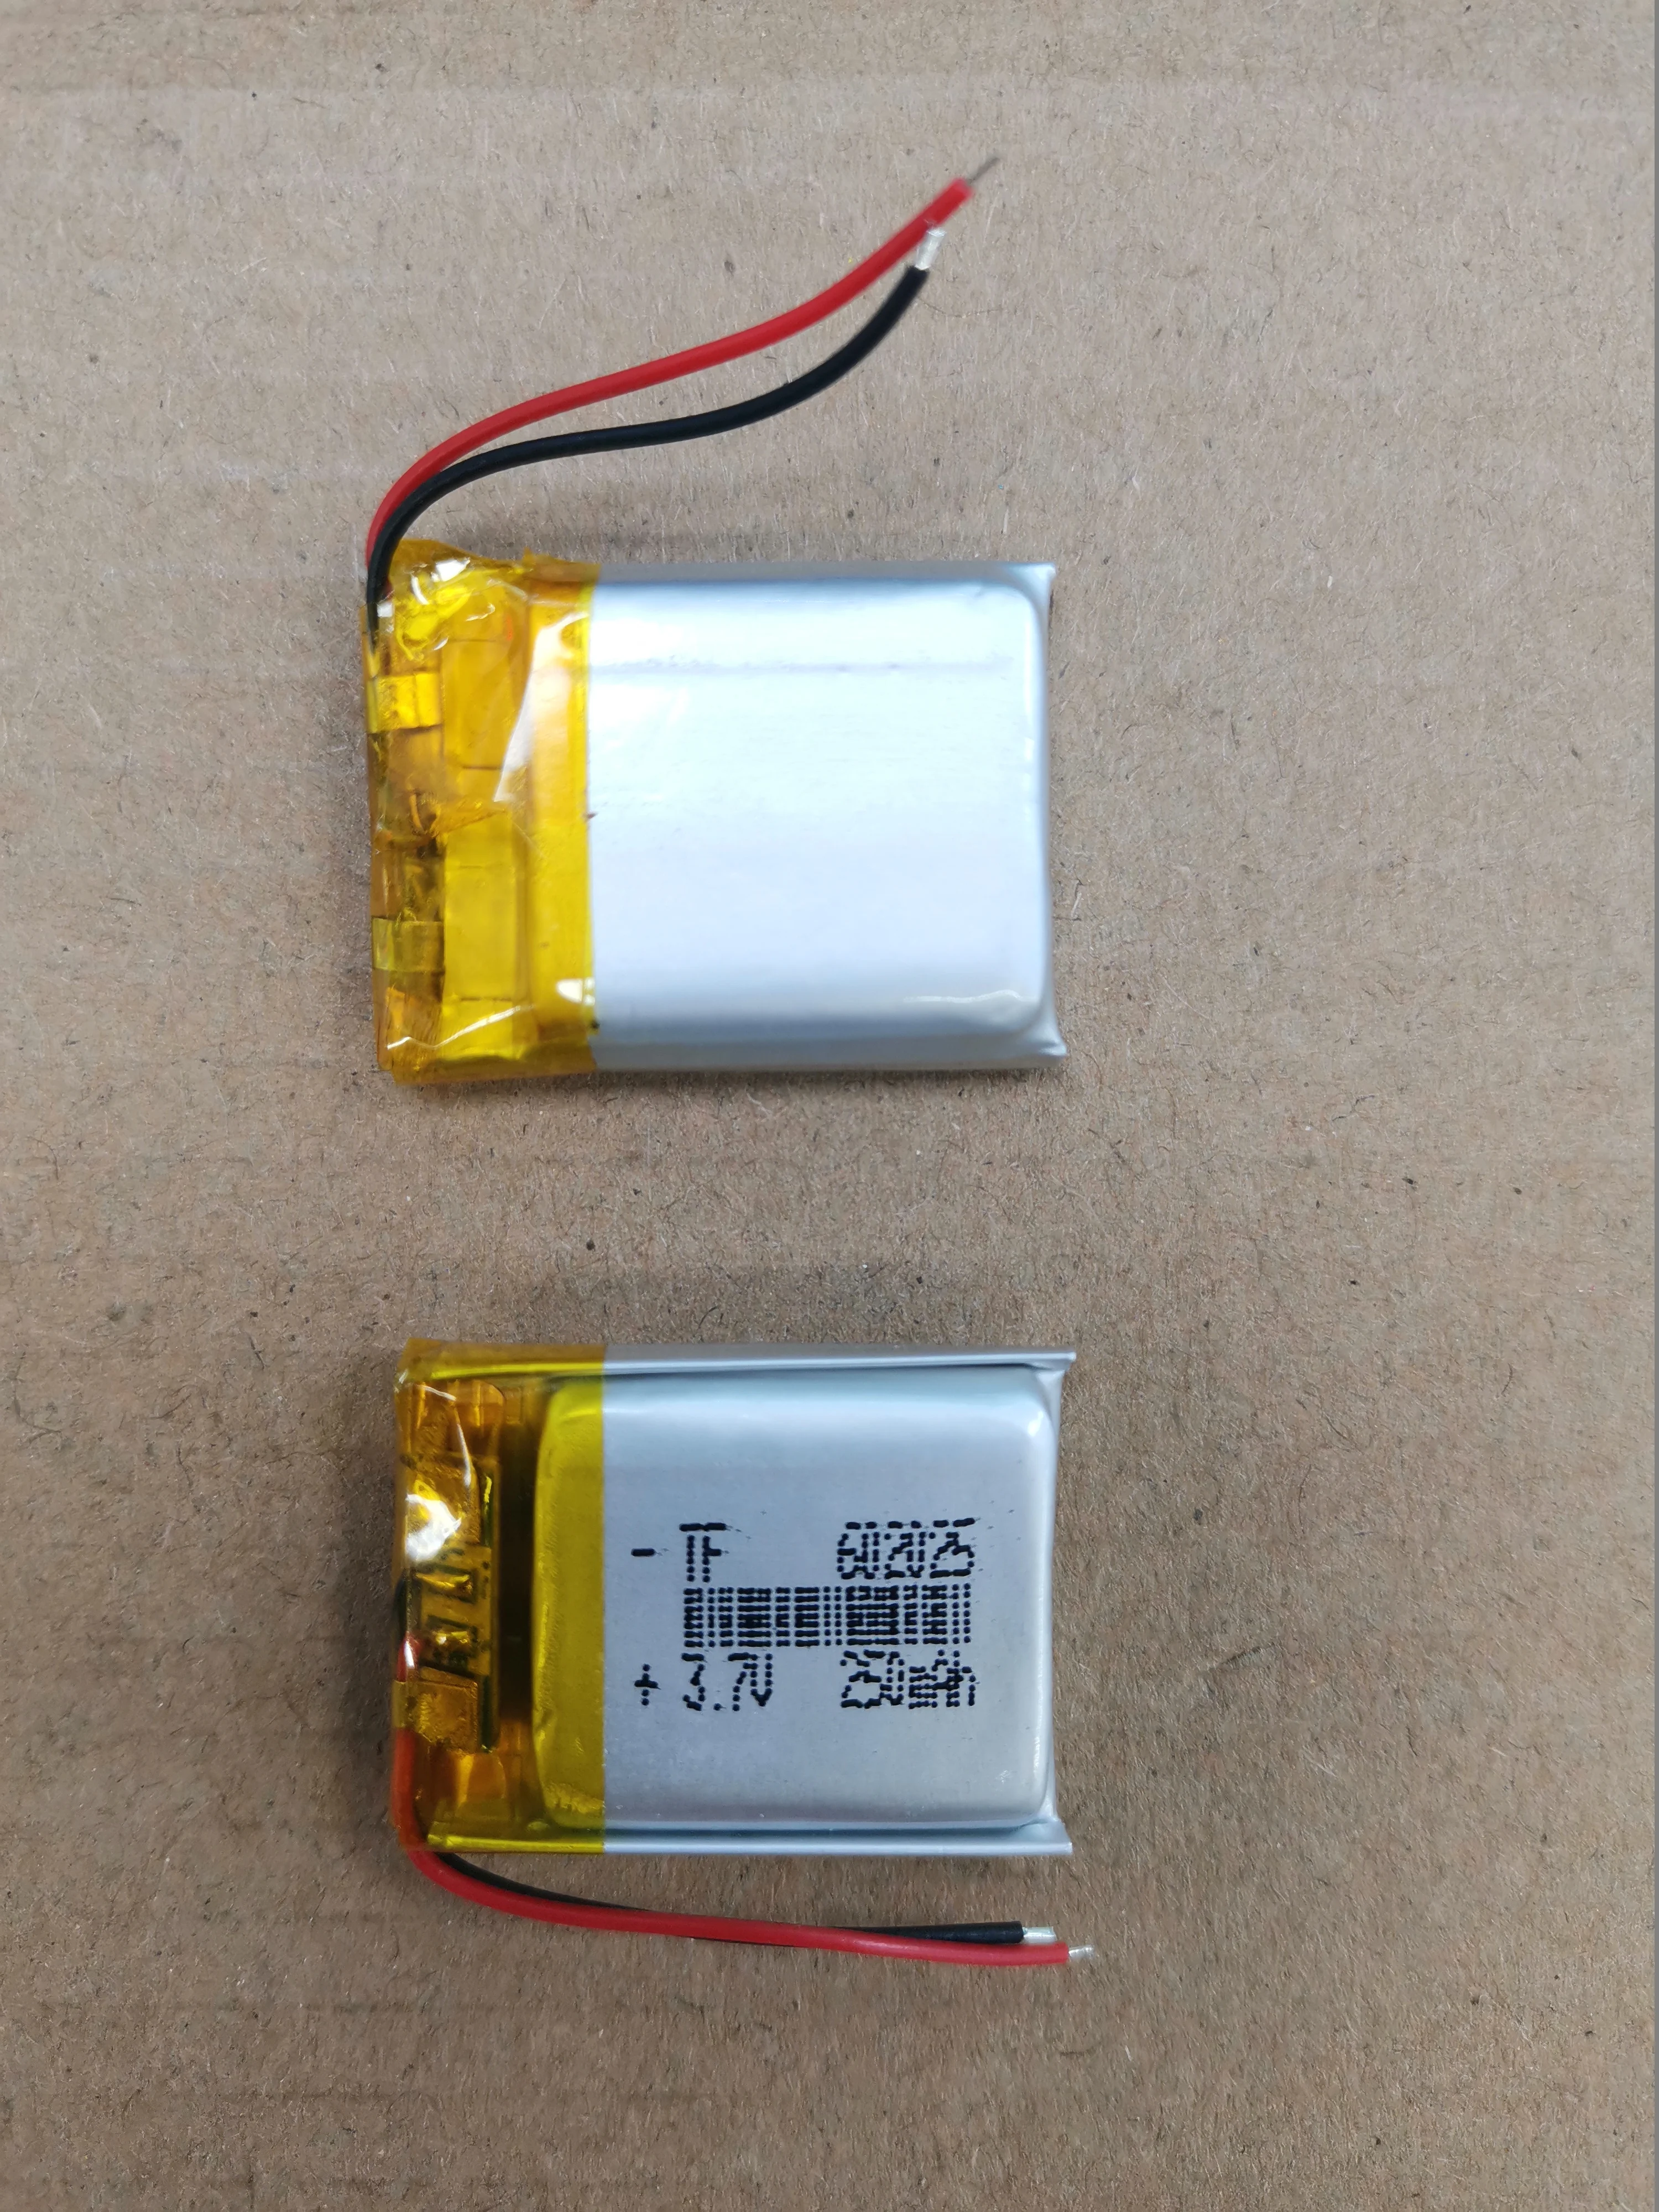 3.7 V 2 Kabel 602025 062025P Baterai lithium 250mah dengan Papan Pelindung, digunakan untuk bluetooth MP4 1 buah / banyak - 0